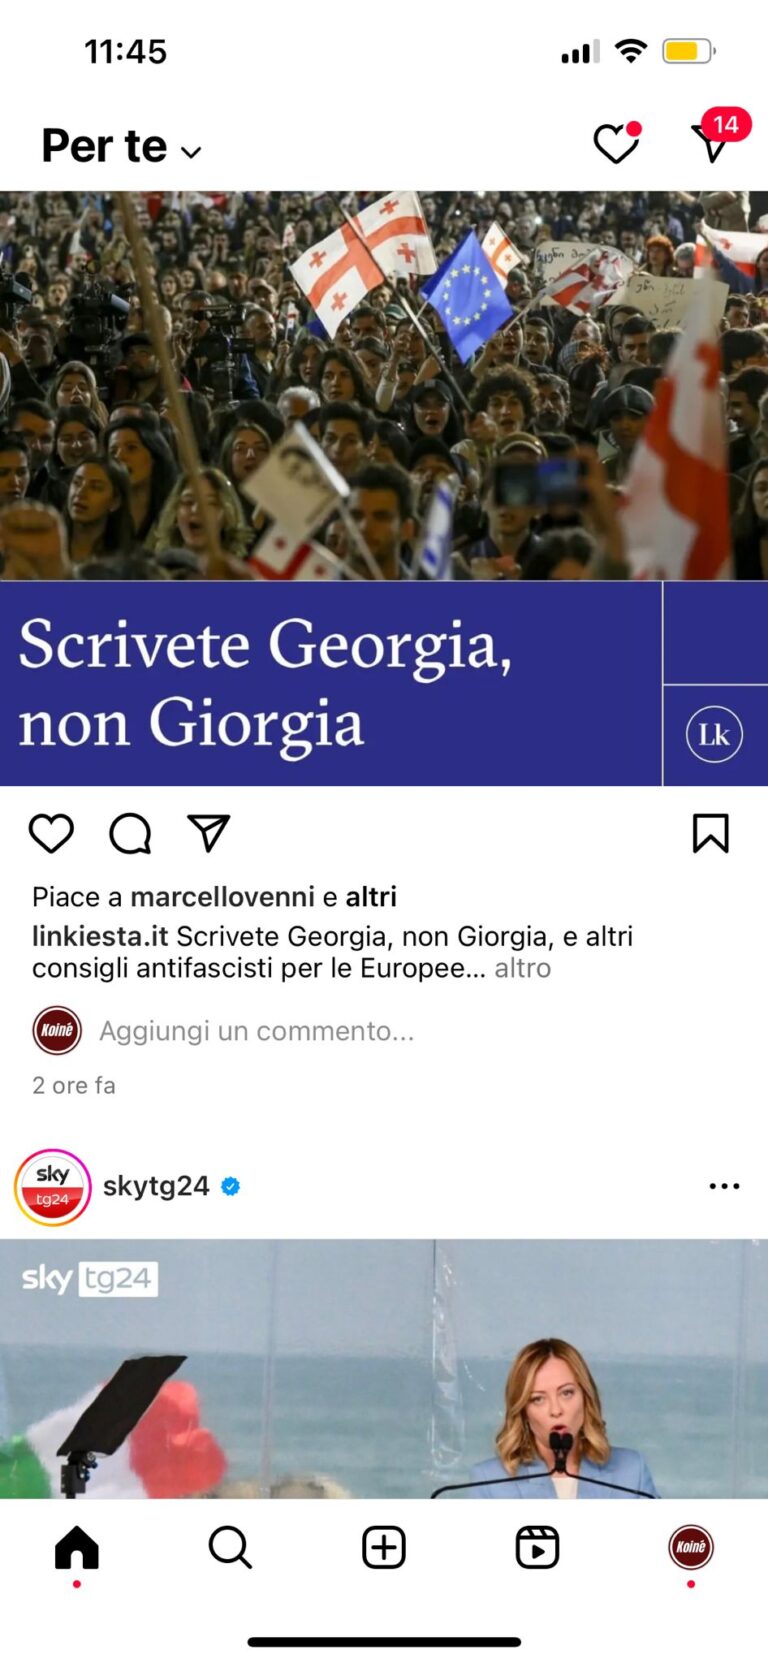 Meta sceglie di limitare i contenuti politici su Instagram